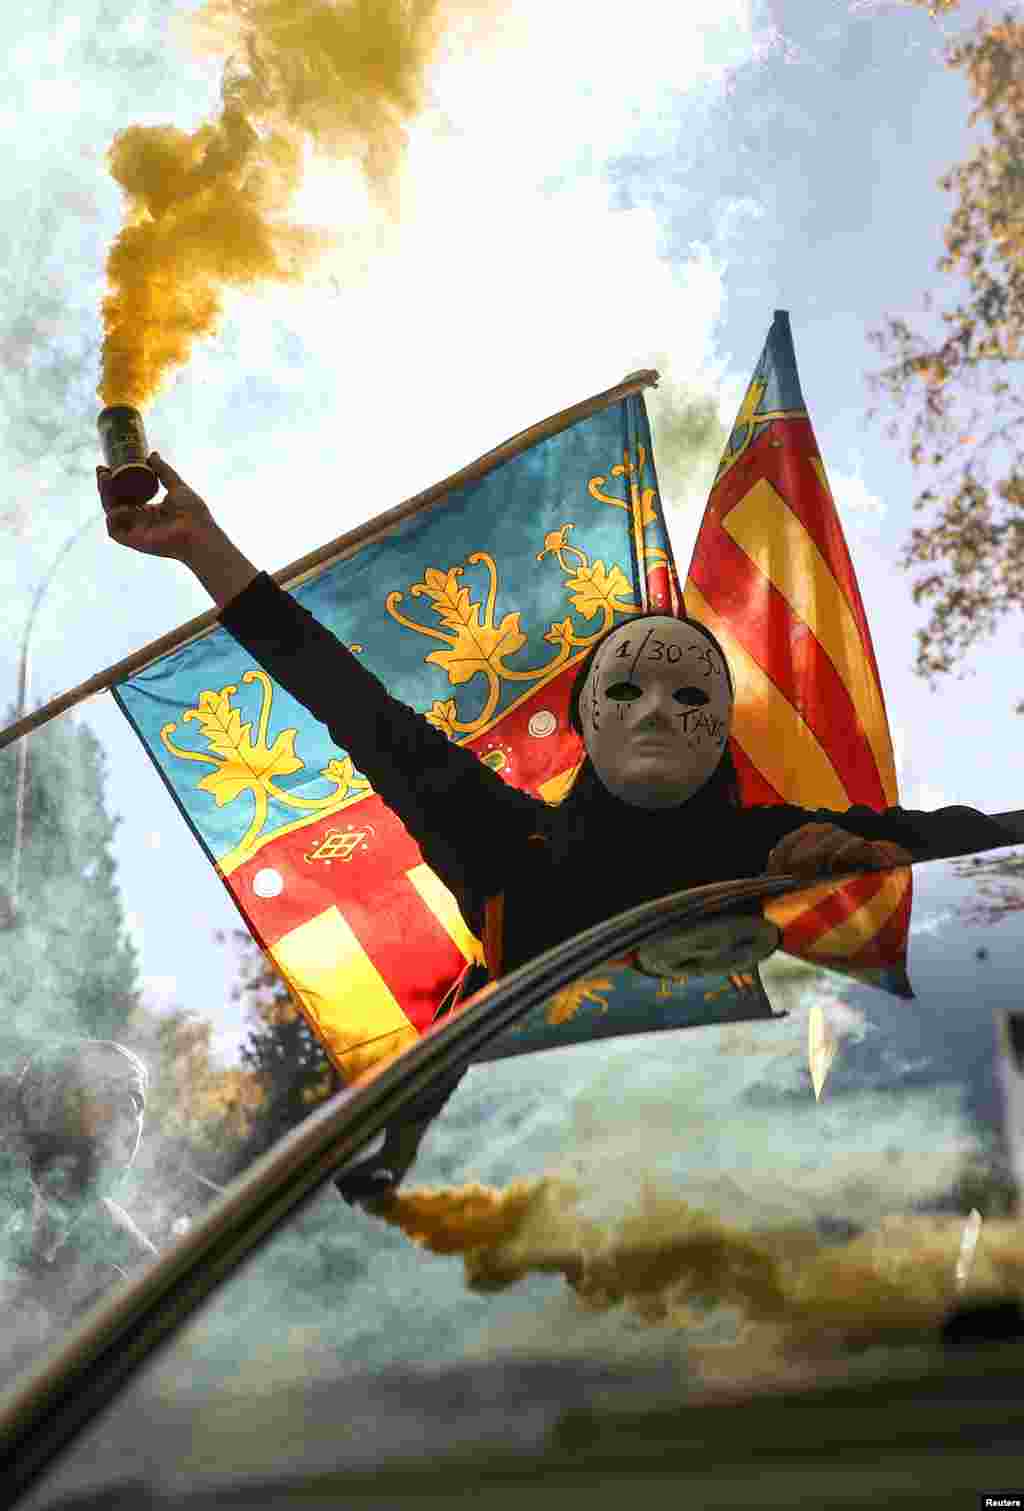 شرکت یک معترض ماسک پوش با نارنجک دودزا در دستش در تظاهرات مادرید اسپانیا بر علیه شرکت های خصوصی مسافربری از جمله اوبر